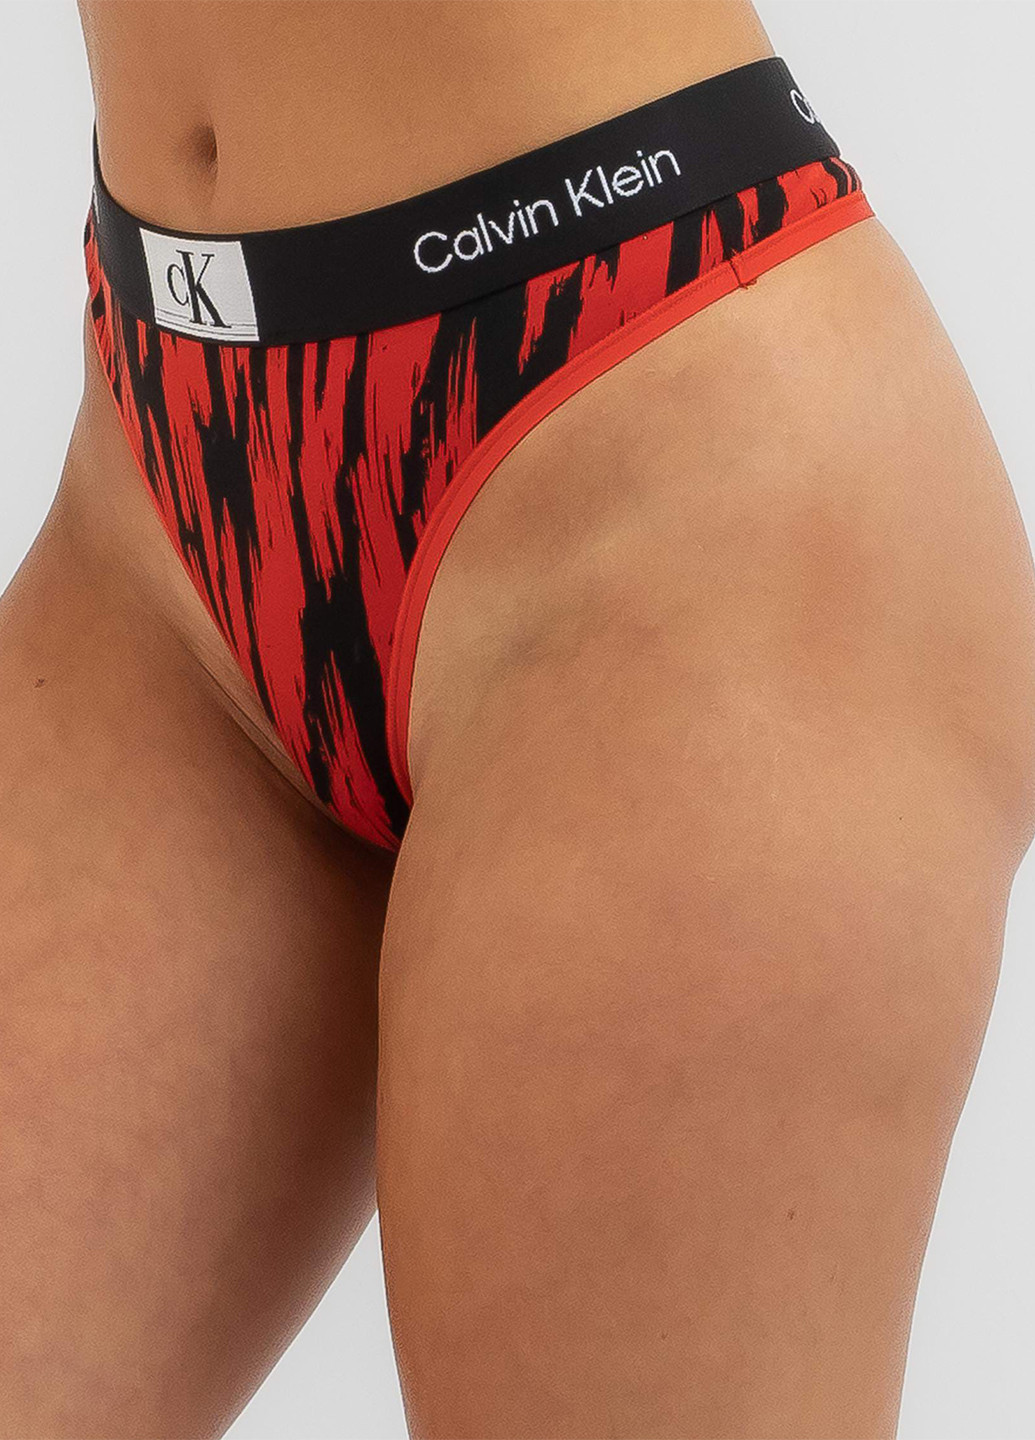 Красный демисезонный комплект (бюстгальтер, трусики) Calvin Klein